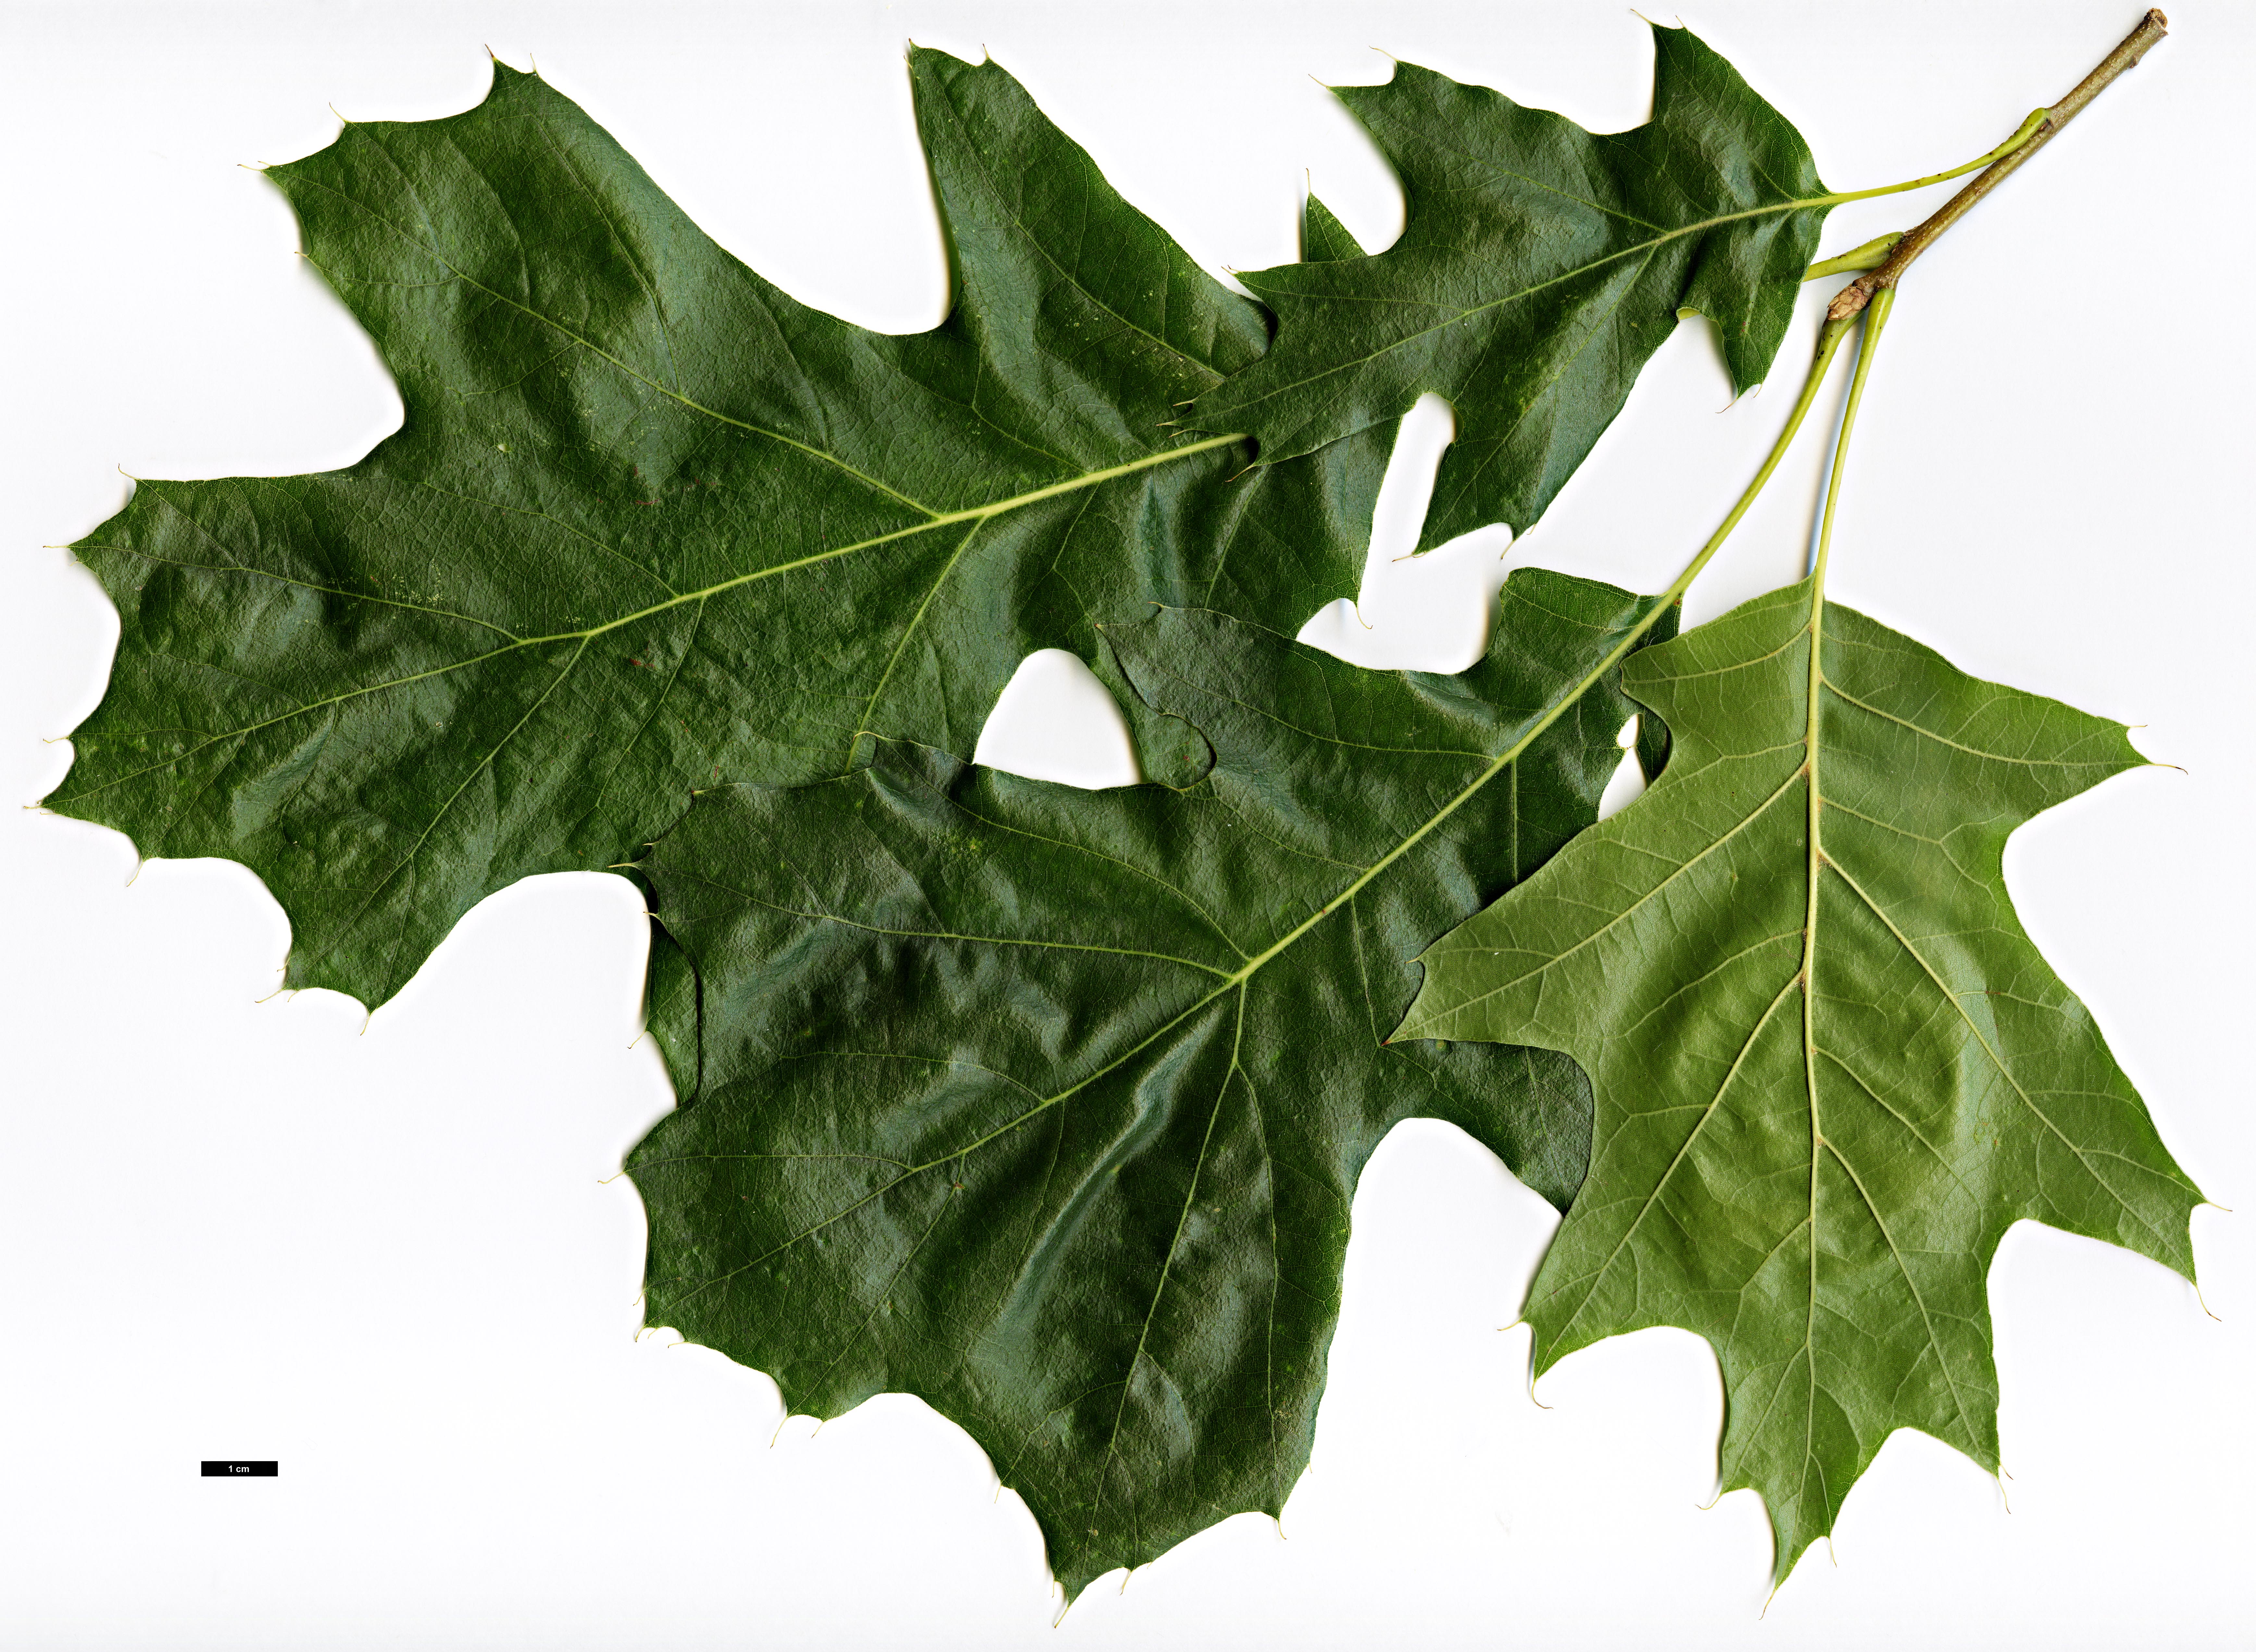 High resolution image: Family: Fagaceae - Genus: Quercus - Taxon: velutina - SpeciesSub: 'Albertsii'